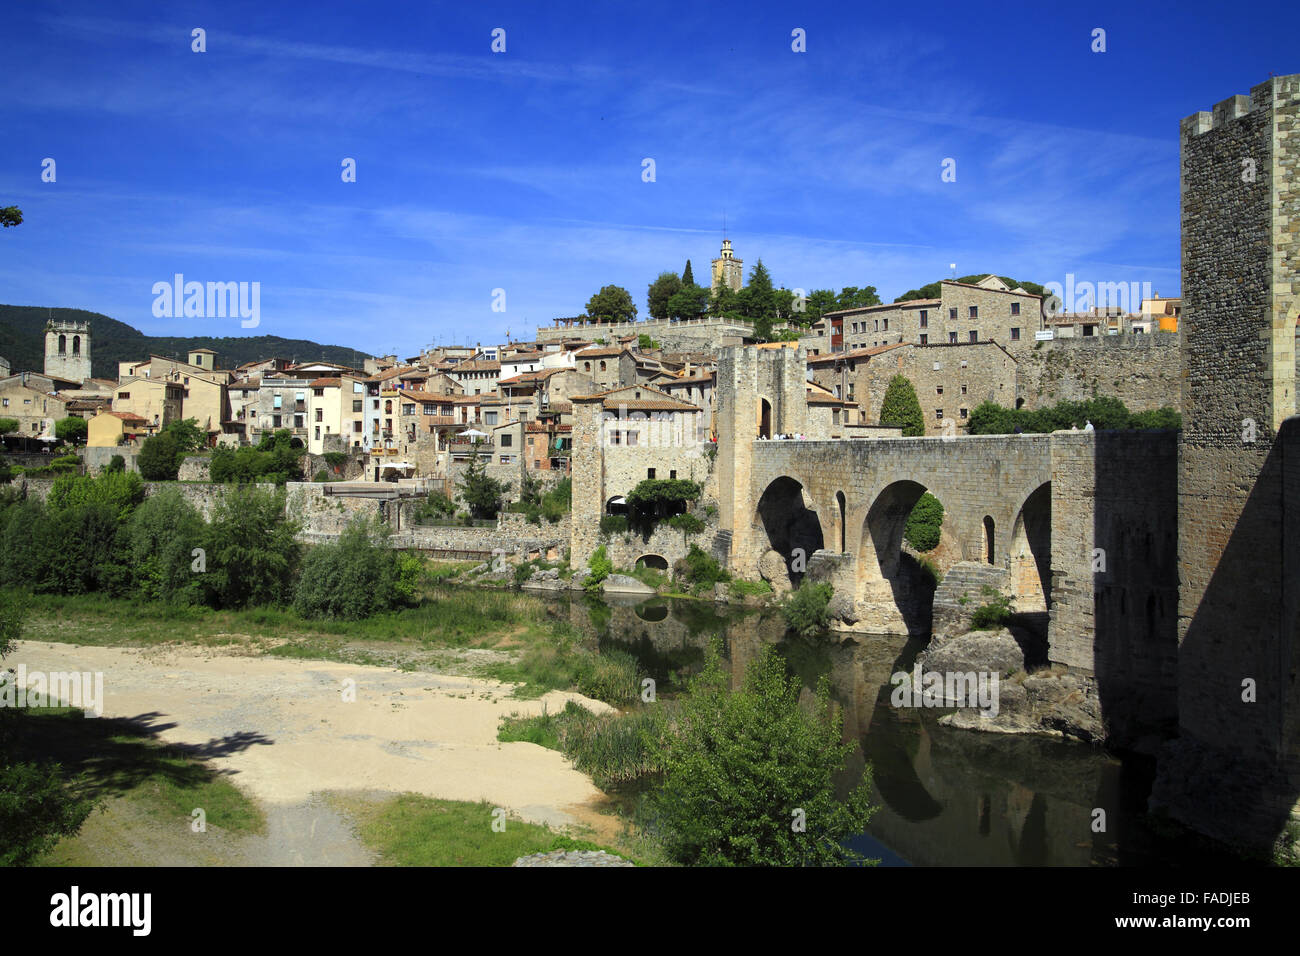 Le village et le pont médiéval de Besalú, situé dans la région de Garrotxa, Costa Brava, Catalogne, Espagne Banque D'Images